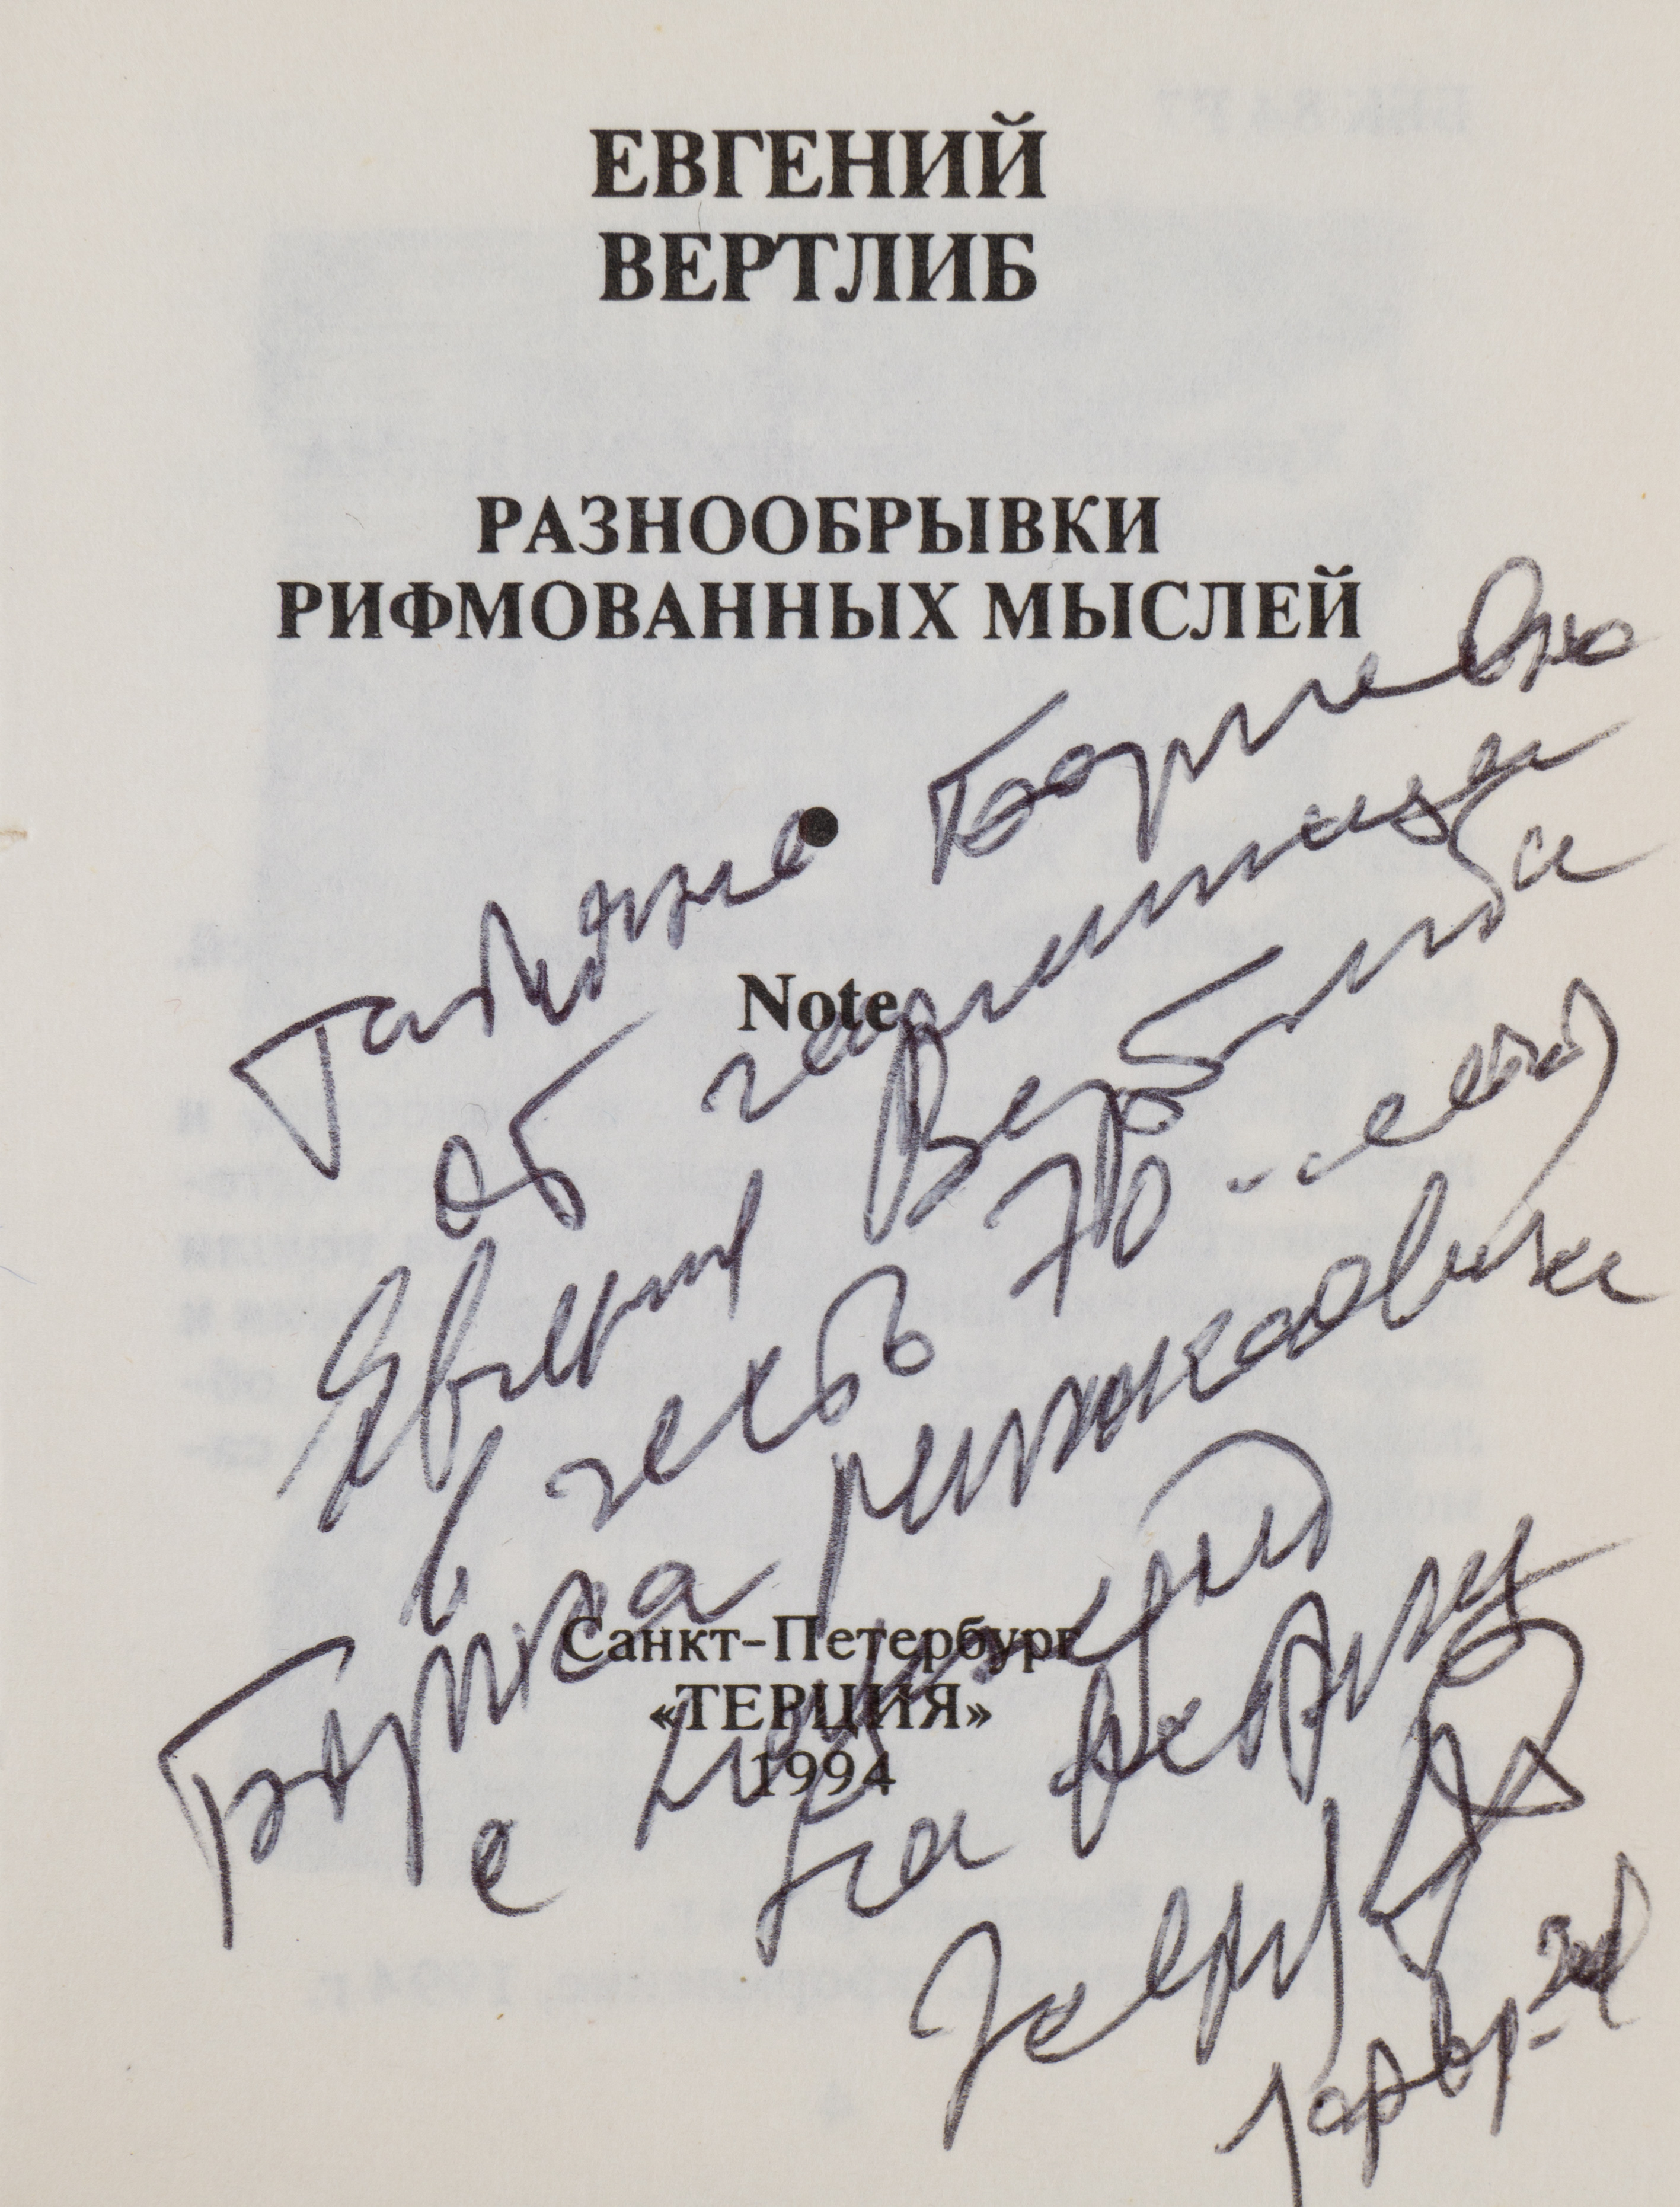 Вертлиб Е. Разнообрывки рифмованных мыслей Note (СПб., 1994). Дарственная надпись.